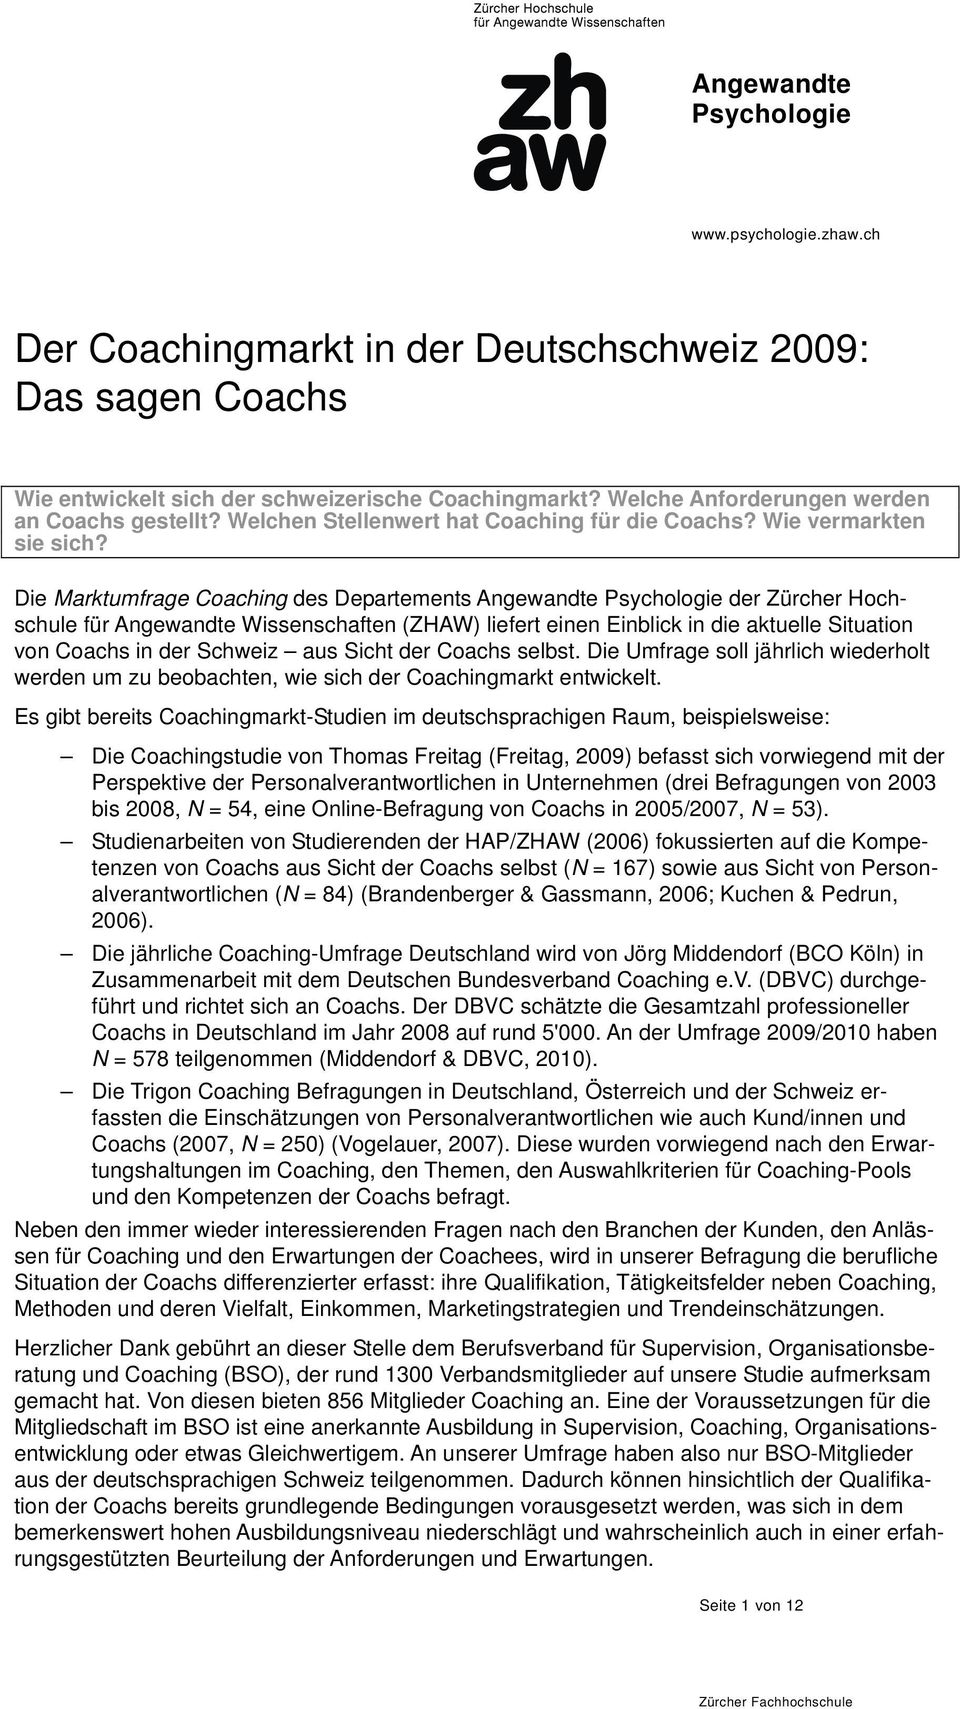 Die Marktumfrage Coaching des Departements Angewandte der Zürcher Hochschule für Angewandte Wissenschaften (ZHAW) liefert einen Einblick in die aktuelle Situation von Coachs in der Schweiz aus Sicht